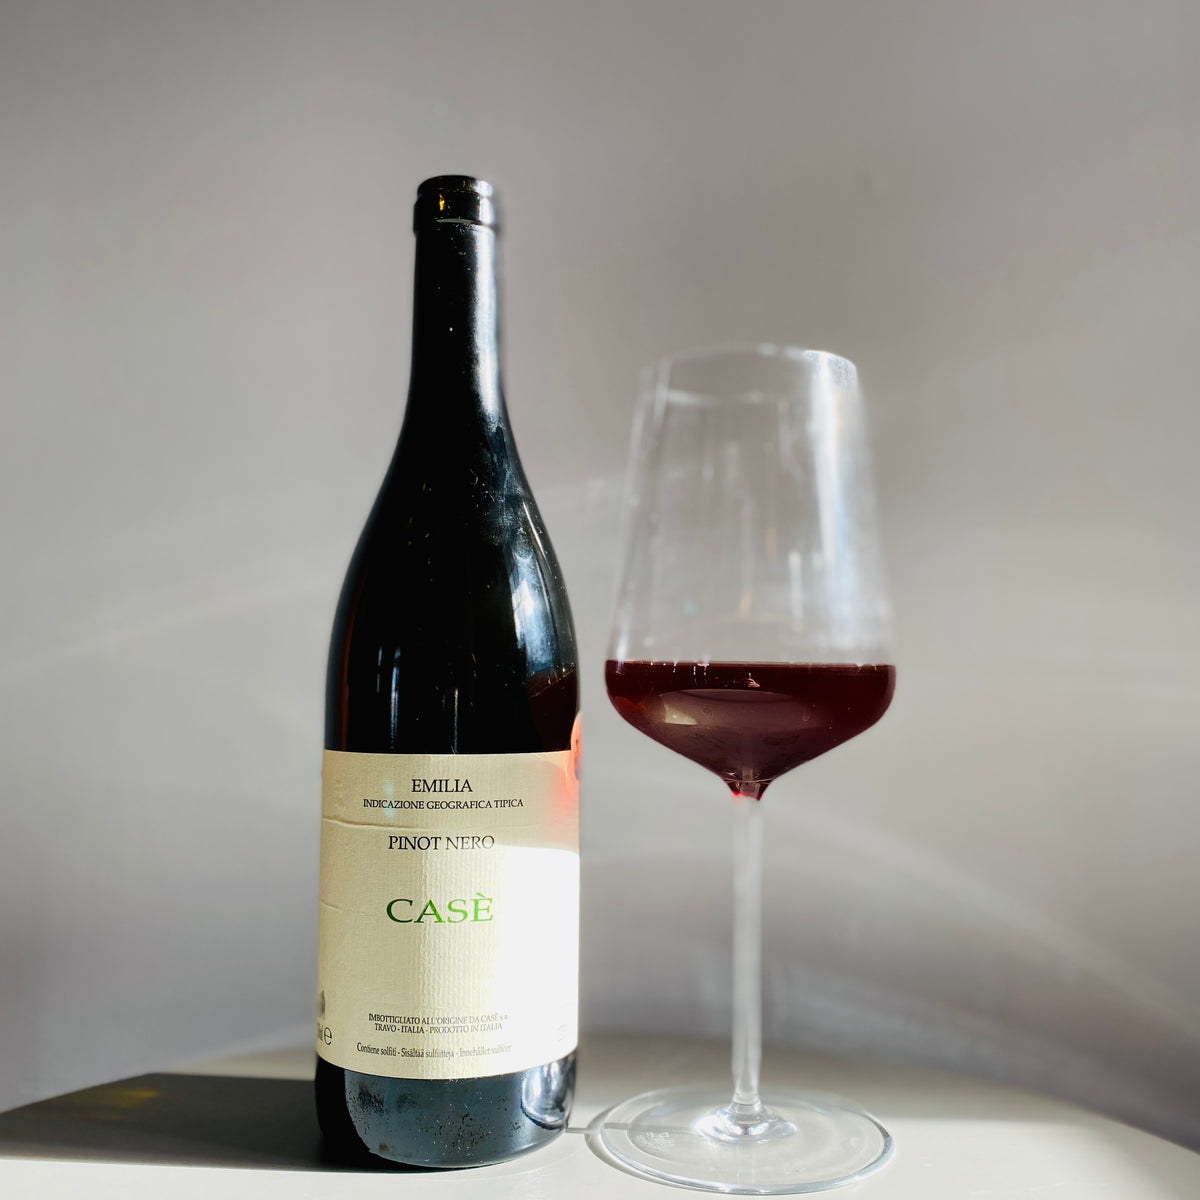 Bouteille de vin rouge nature du Domaine Casè en Émile-Romagne: Pinot nero (Image: 2 sur 2)